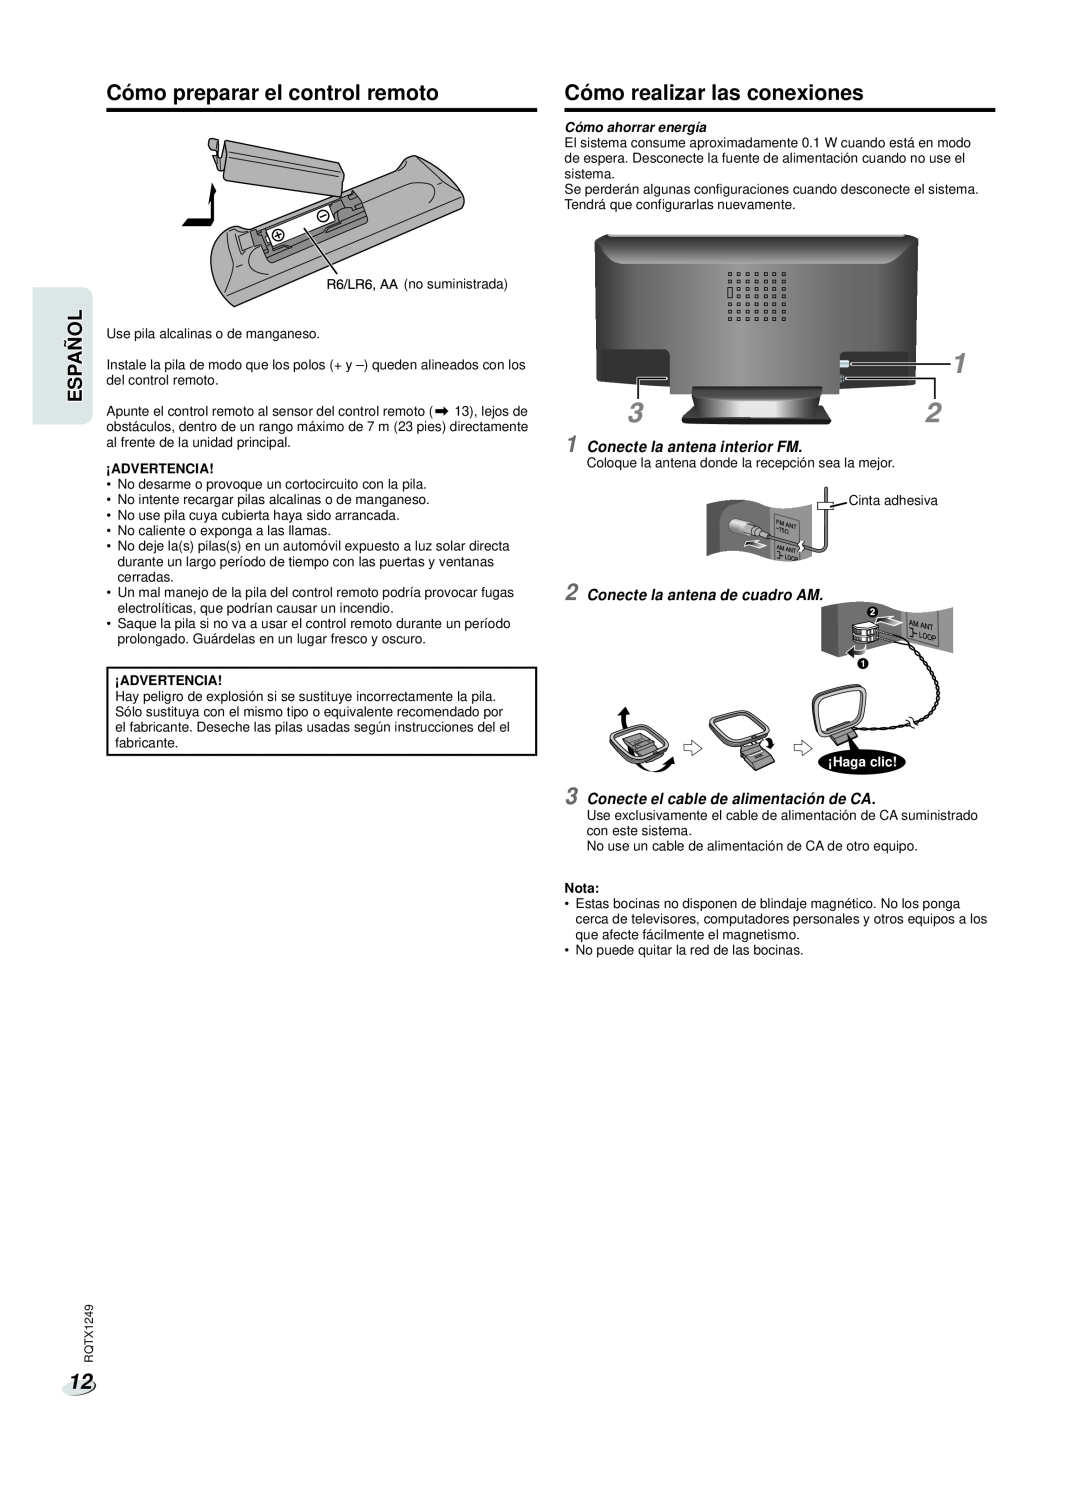 Panasonic SC-HC25 Cómo preparar el control remoto, Cómo realizar las conexiones, Conecte la antena interior FM, ¡Haga clic 